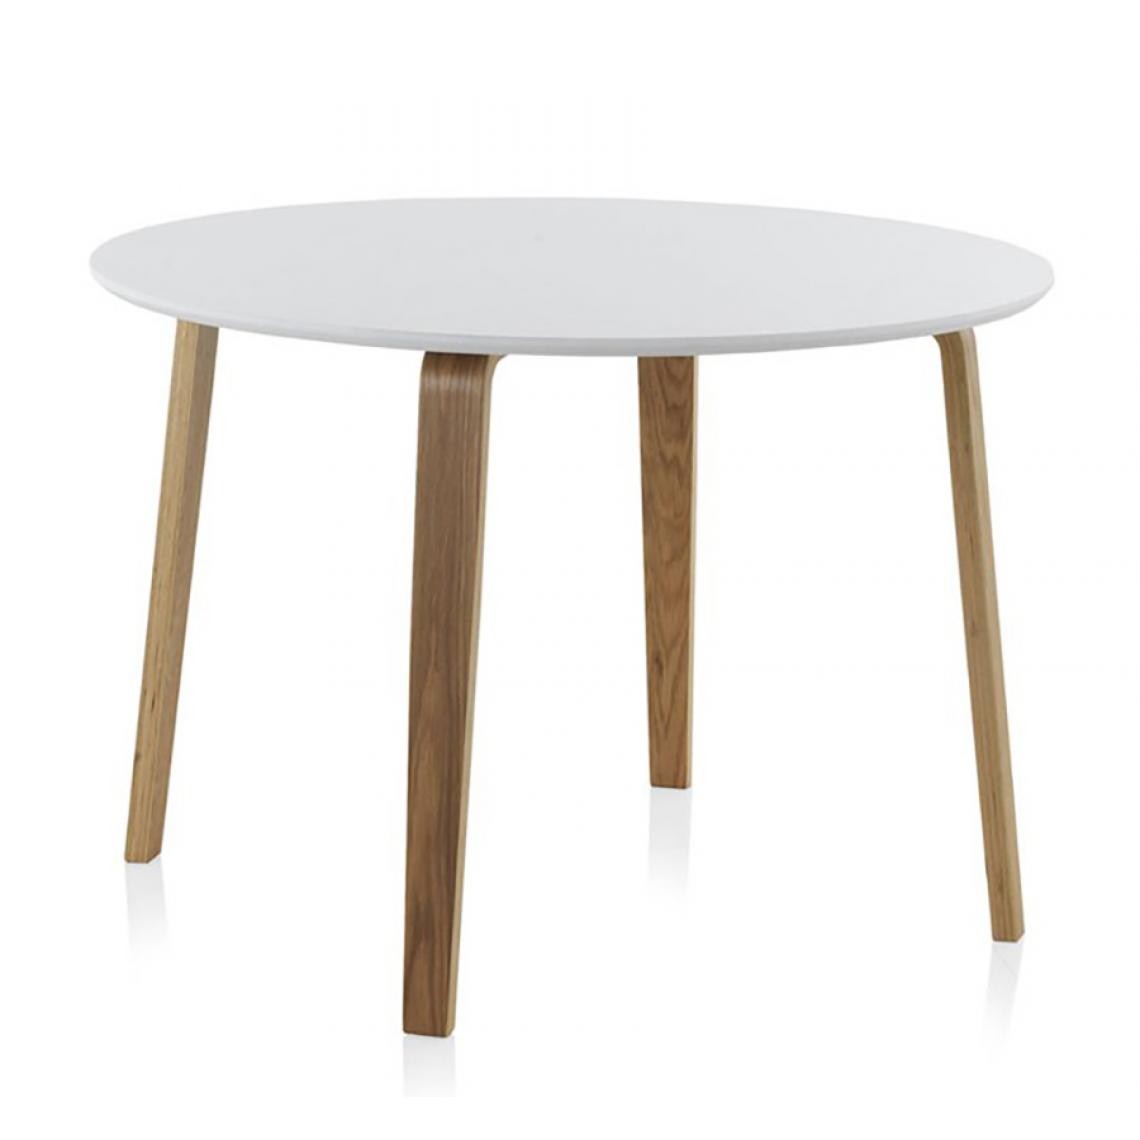 Pegane - Table ronde avec plateau en MDF blanc mat et pieds en chêne naturel -Ø 110 x Hauteur 75 cm - Tables à manger